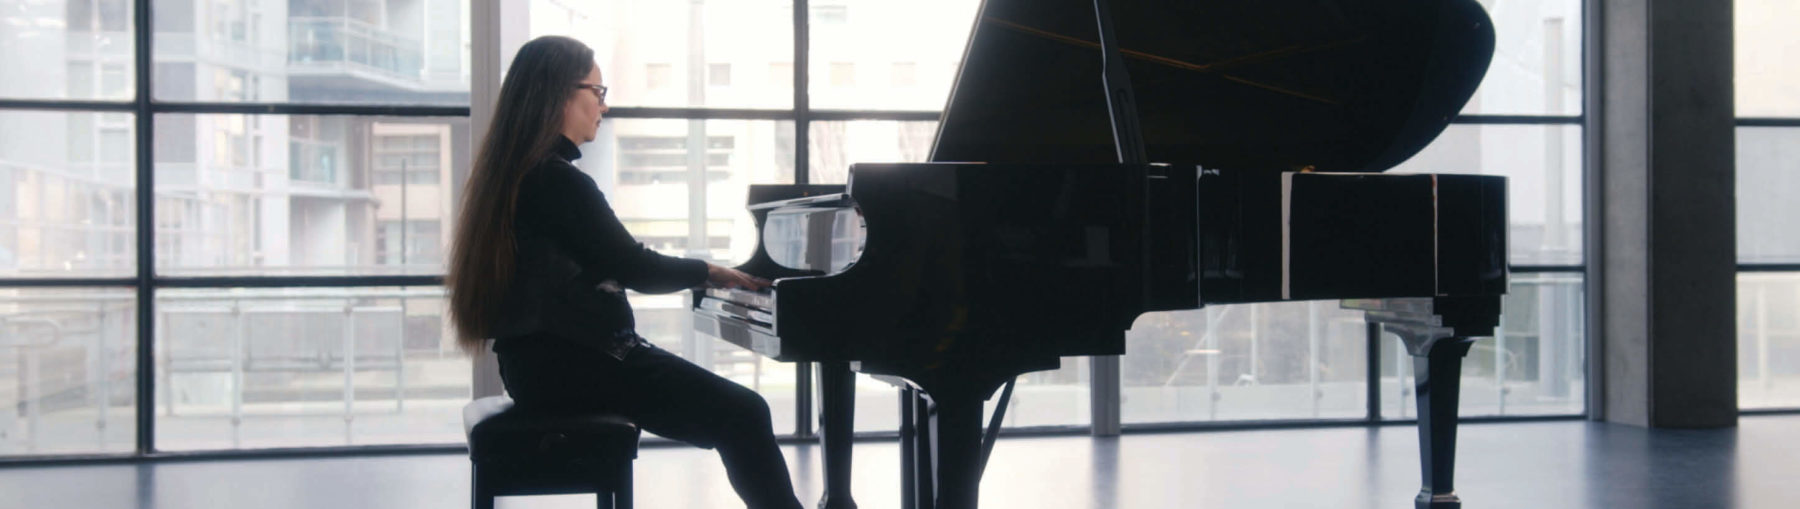 Rachel Kiyo Iwaasa playing the piano